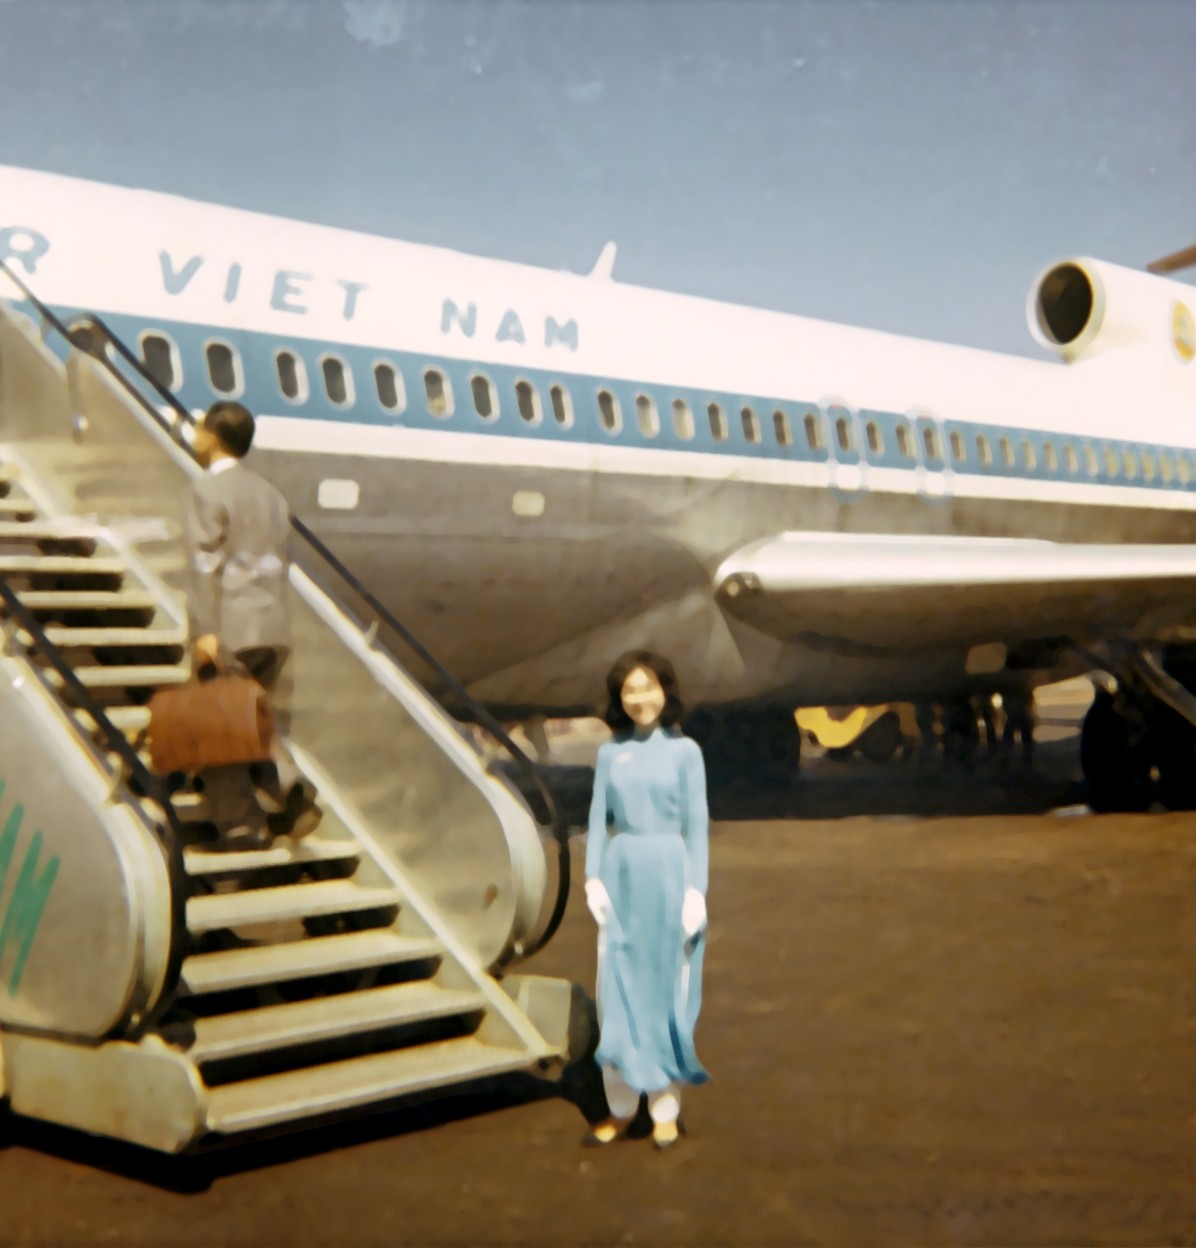 1968 Saigon, Vietnam, an Air Vietnam Flight Attendant welcomes passengers aboard a Boeing 727-100 leased from Pan Am.